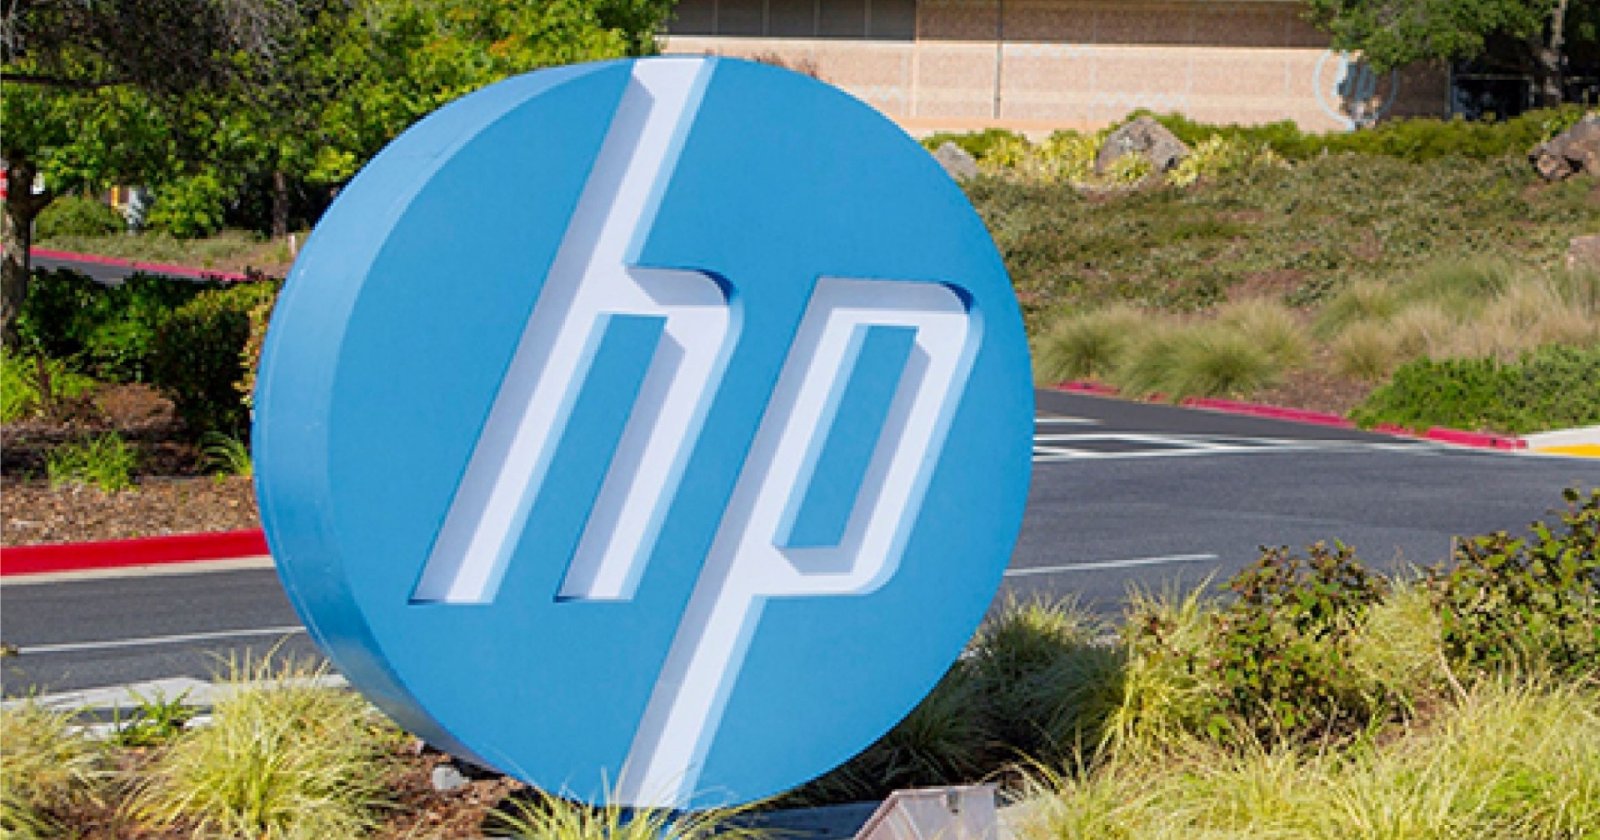 ศาลไม่ยกคำร้องที่ลูกค้าฟ้องว่า HP จงใจทำให้เครื่องพิมพ์สแกนไม่ได้หากไม่มีหมึก